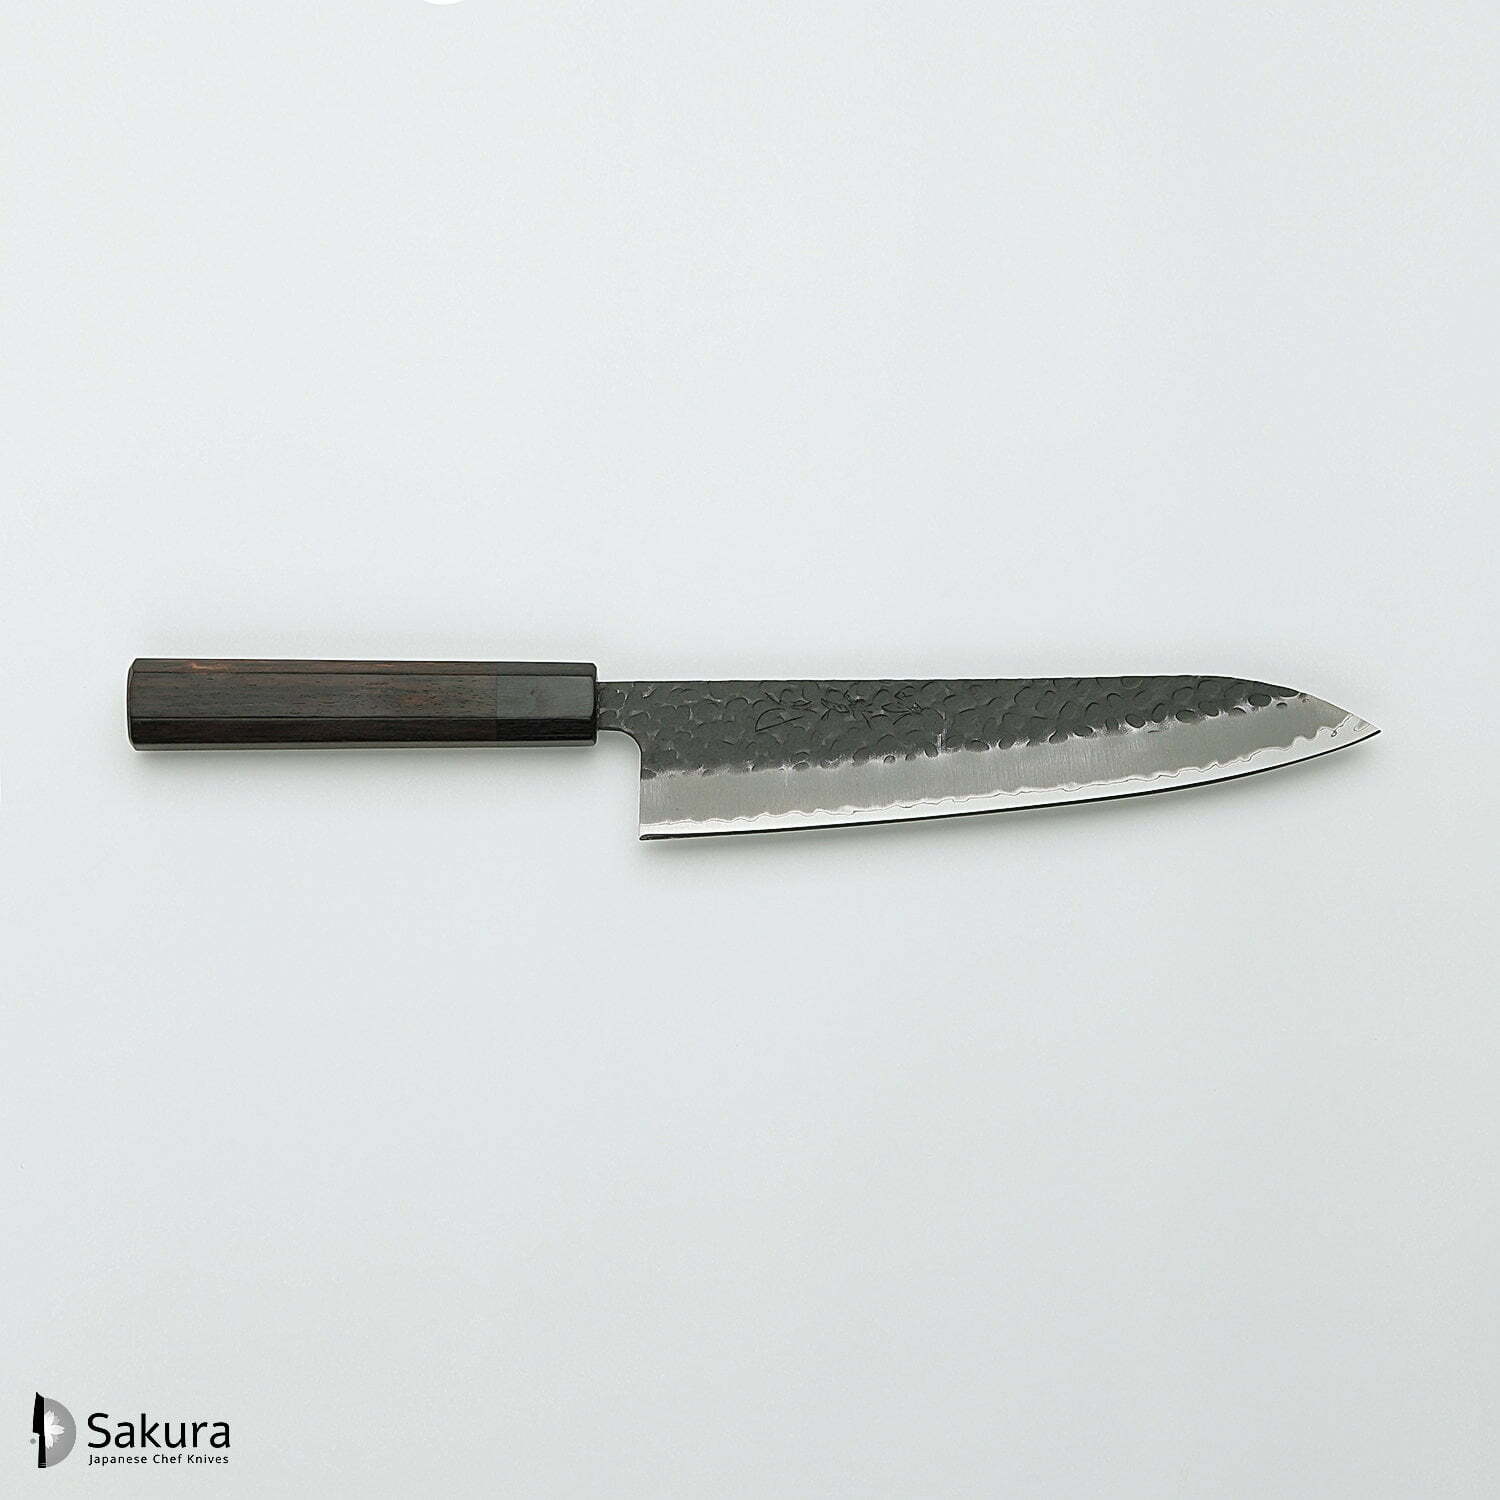 סכין שף רב-תכליתית גִּיוּטוֹ 210מ״מ מחוזקת 3 שכבות: פלדת פחמן יפנית מתקדמת מסוג Aogami Super עטופה פלדת אל-חלד גימור קורואיצ׳י שחור עם ריקוע פטיש ג׳יקו סאקאיי יפן